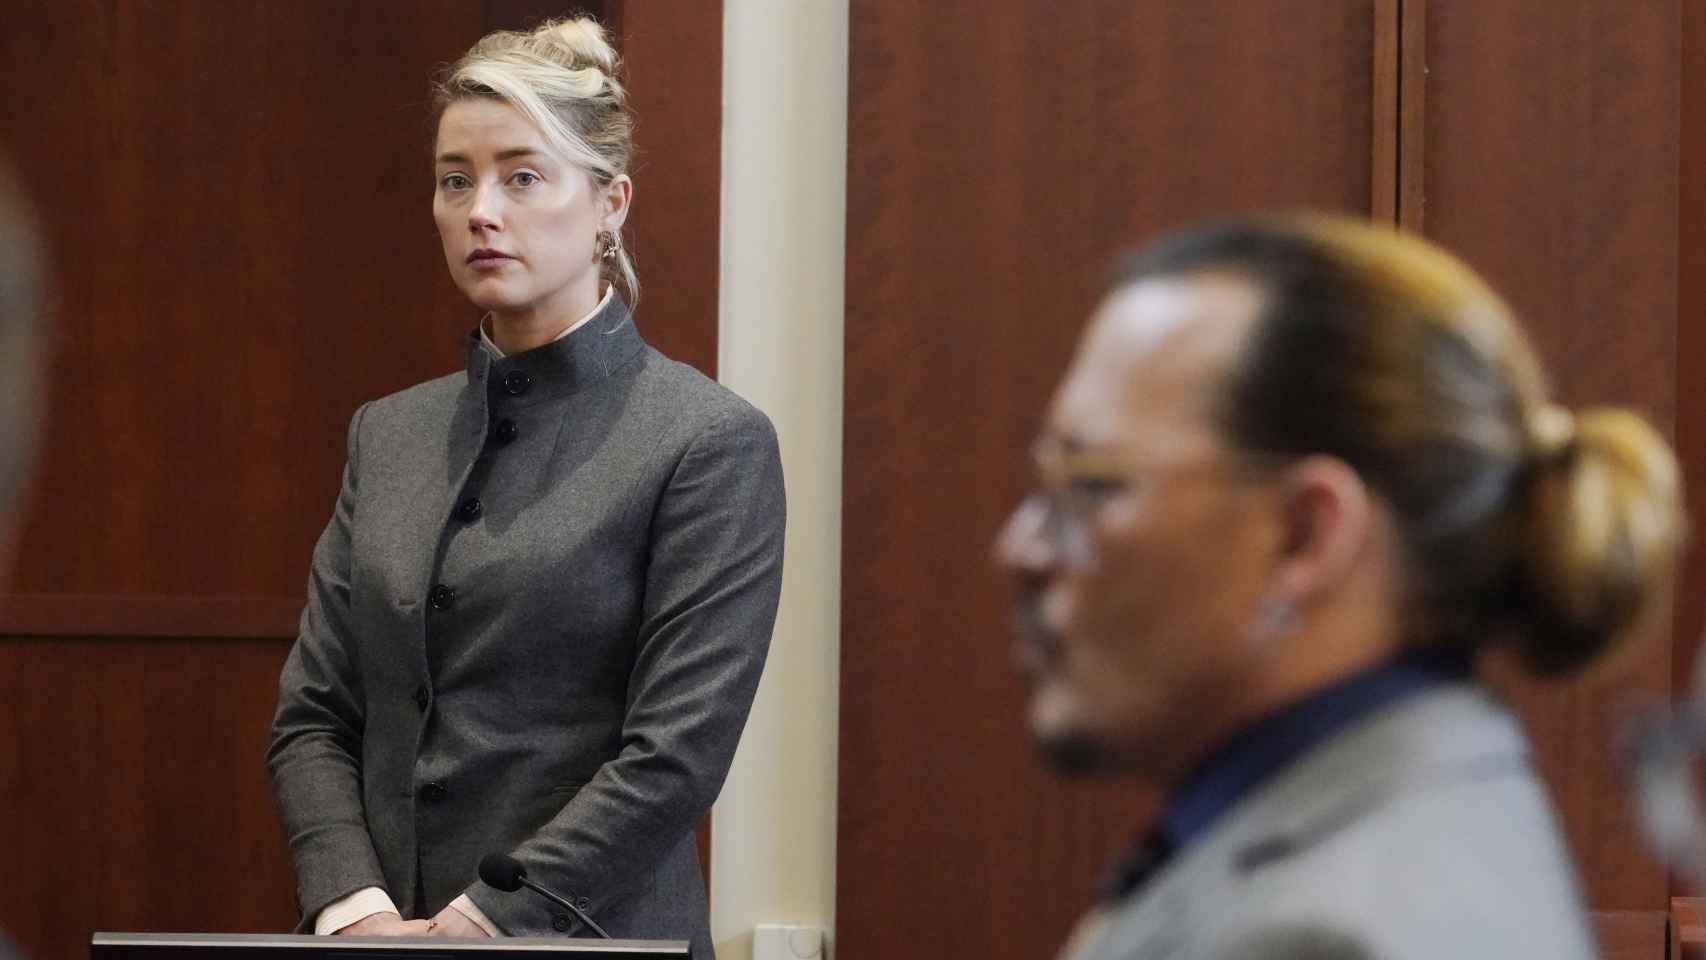 El juicio que enfrentó a Amber Heard y Johnny Depp duró seis semanas.